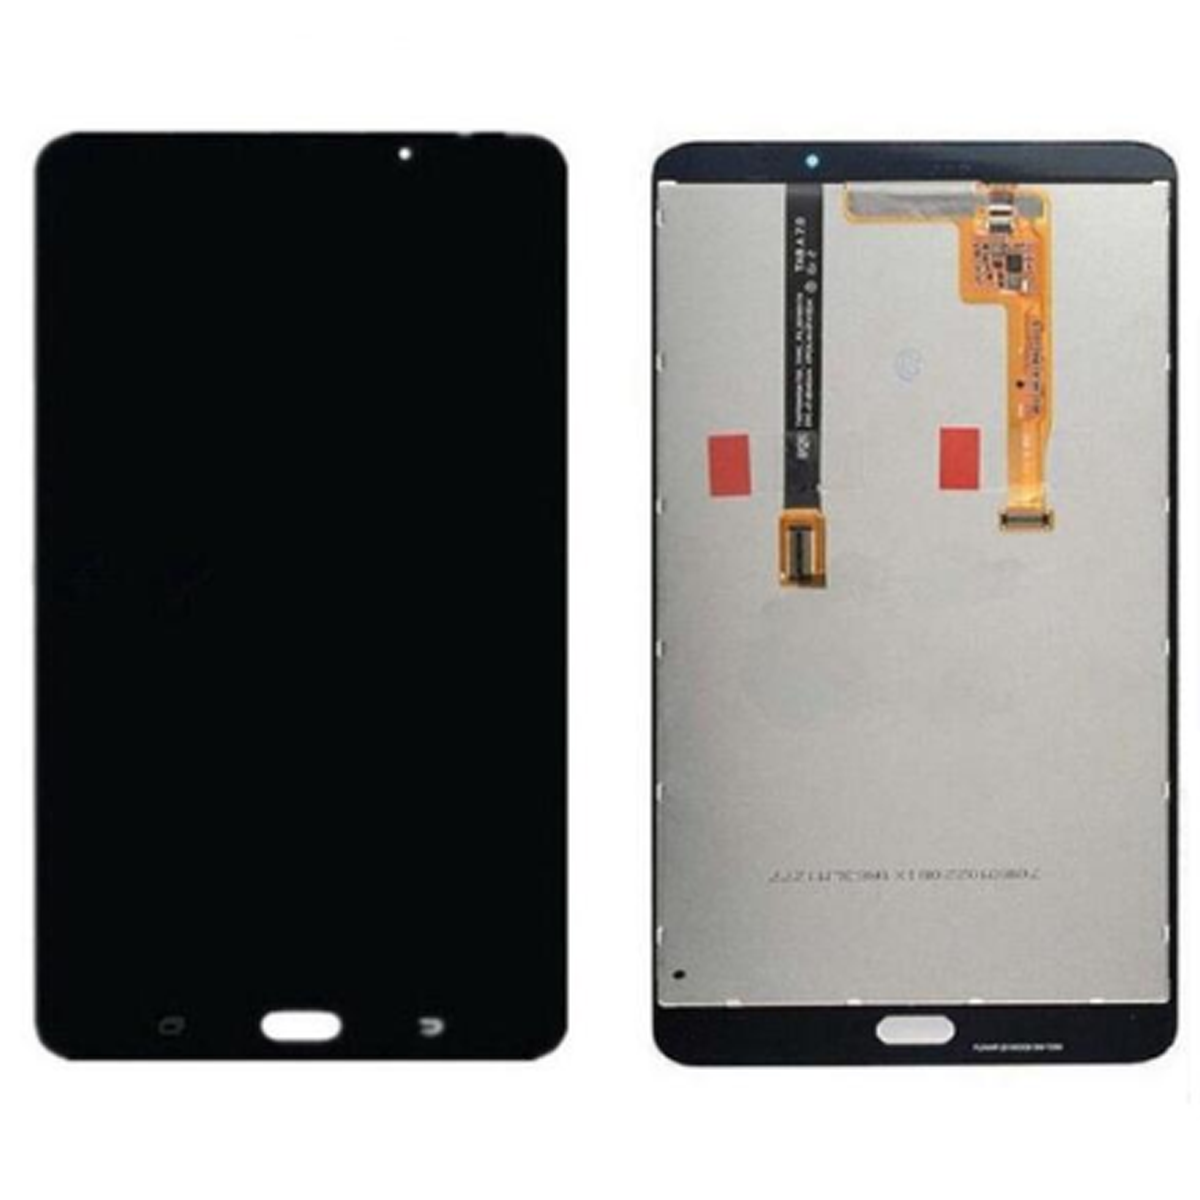 Pantalla Completa Per Tablet Samsung Galaxy Tab A / T280 Negre